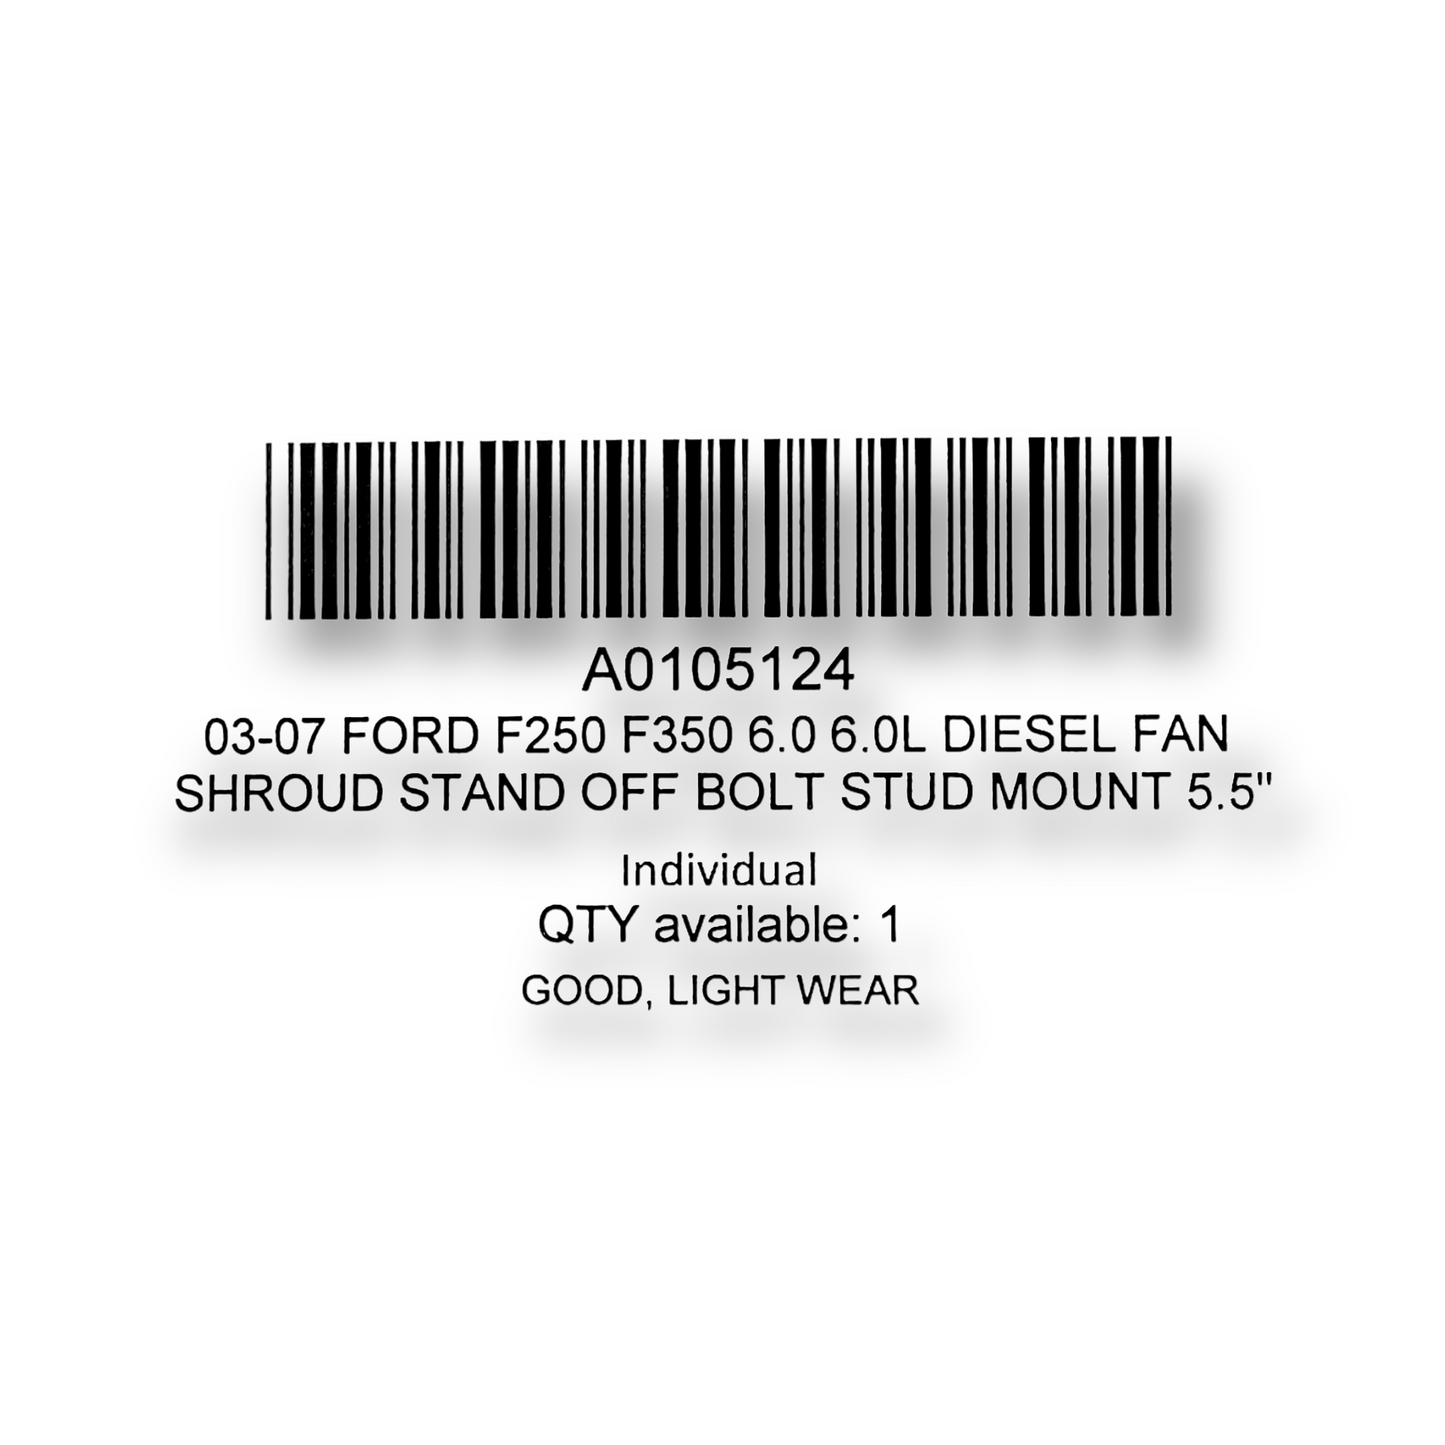 03-07 Ford F250 F350 6.0 6.0L Diesel Fan Shroud Stand Off Bolt Stud Mount 5.5"